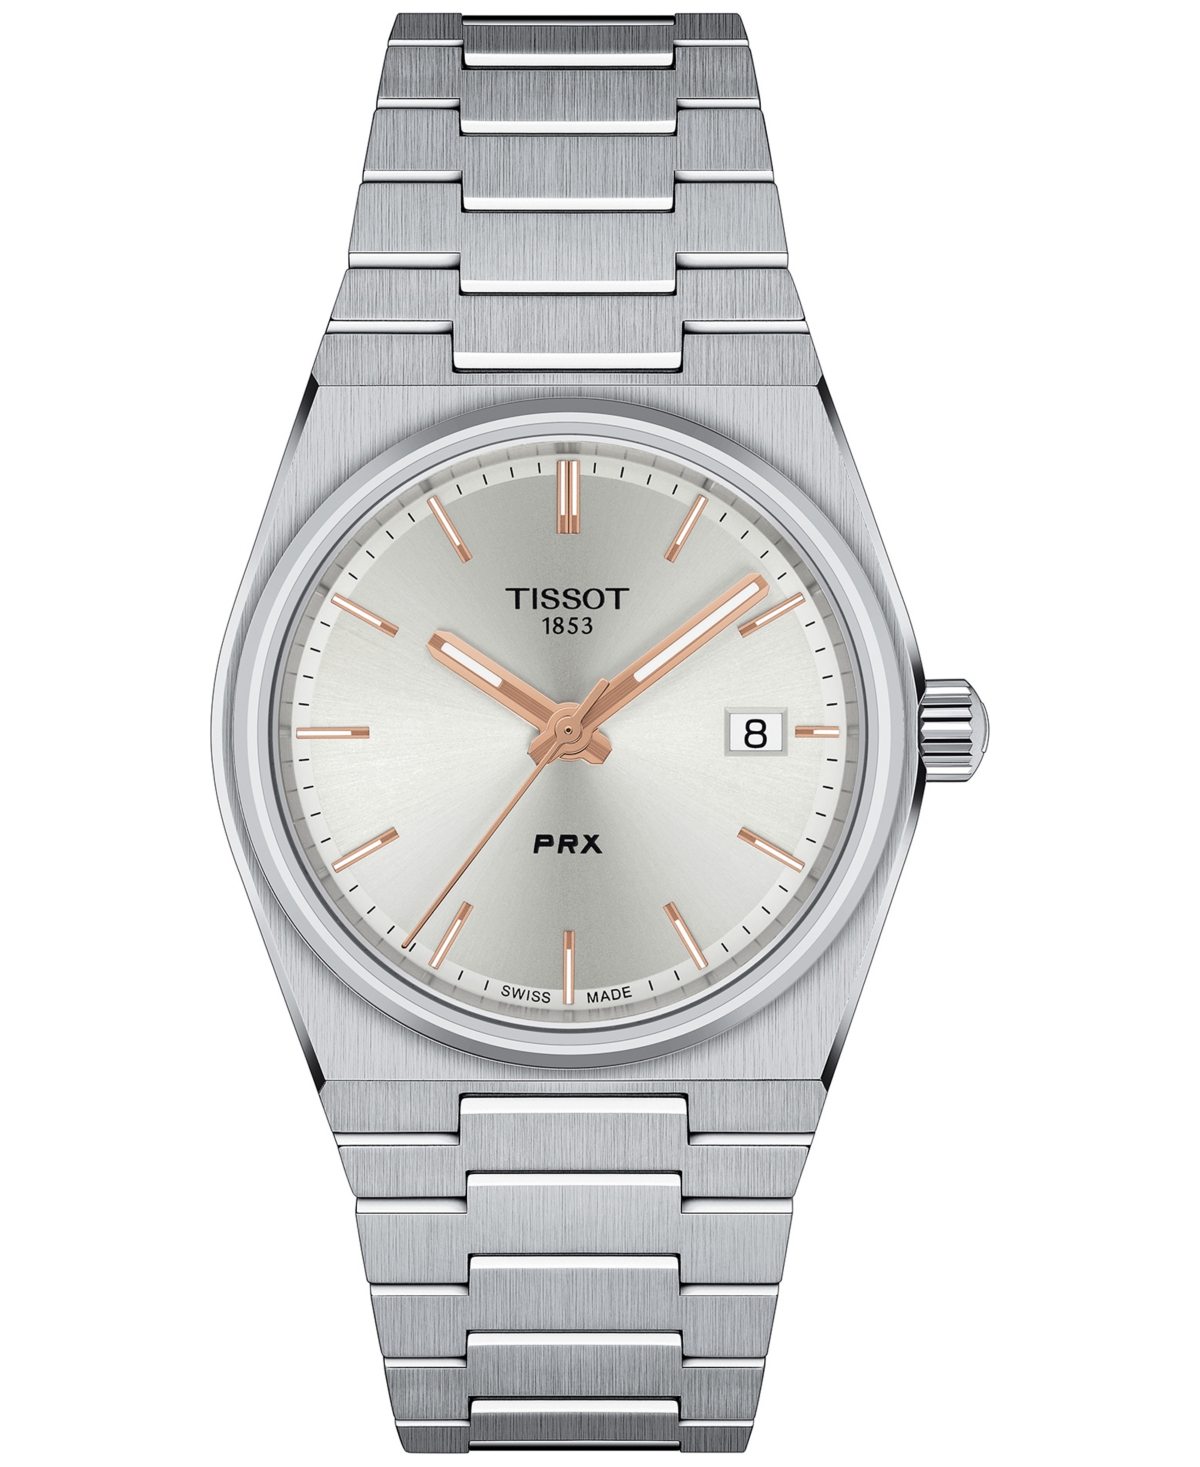 Unisex Prx Silver-Tone Stainless Steel Bracelet Watch 35mm - Silver